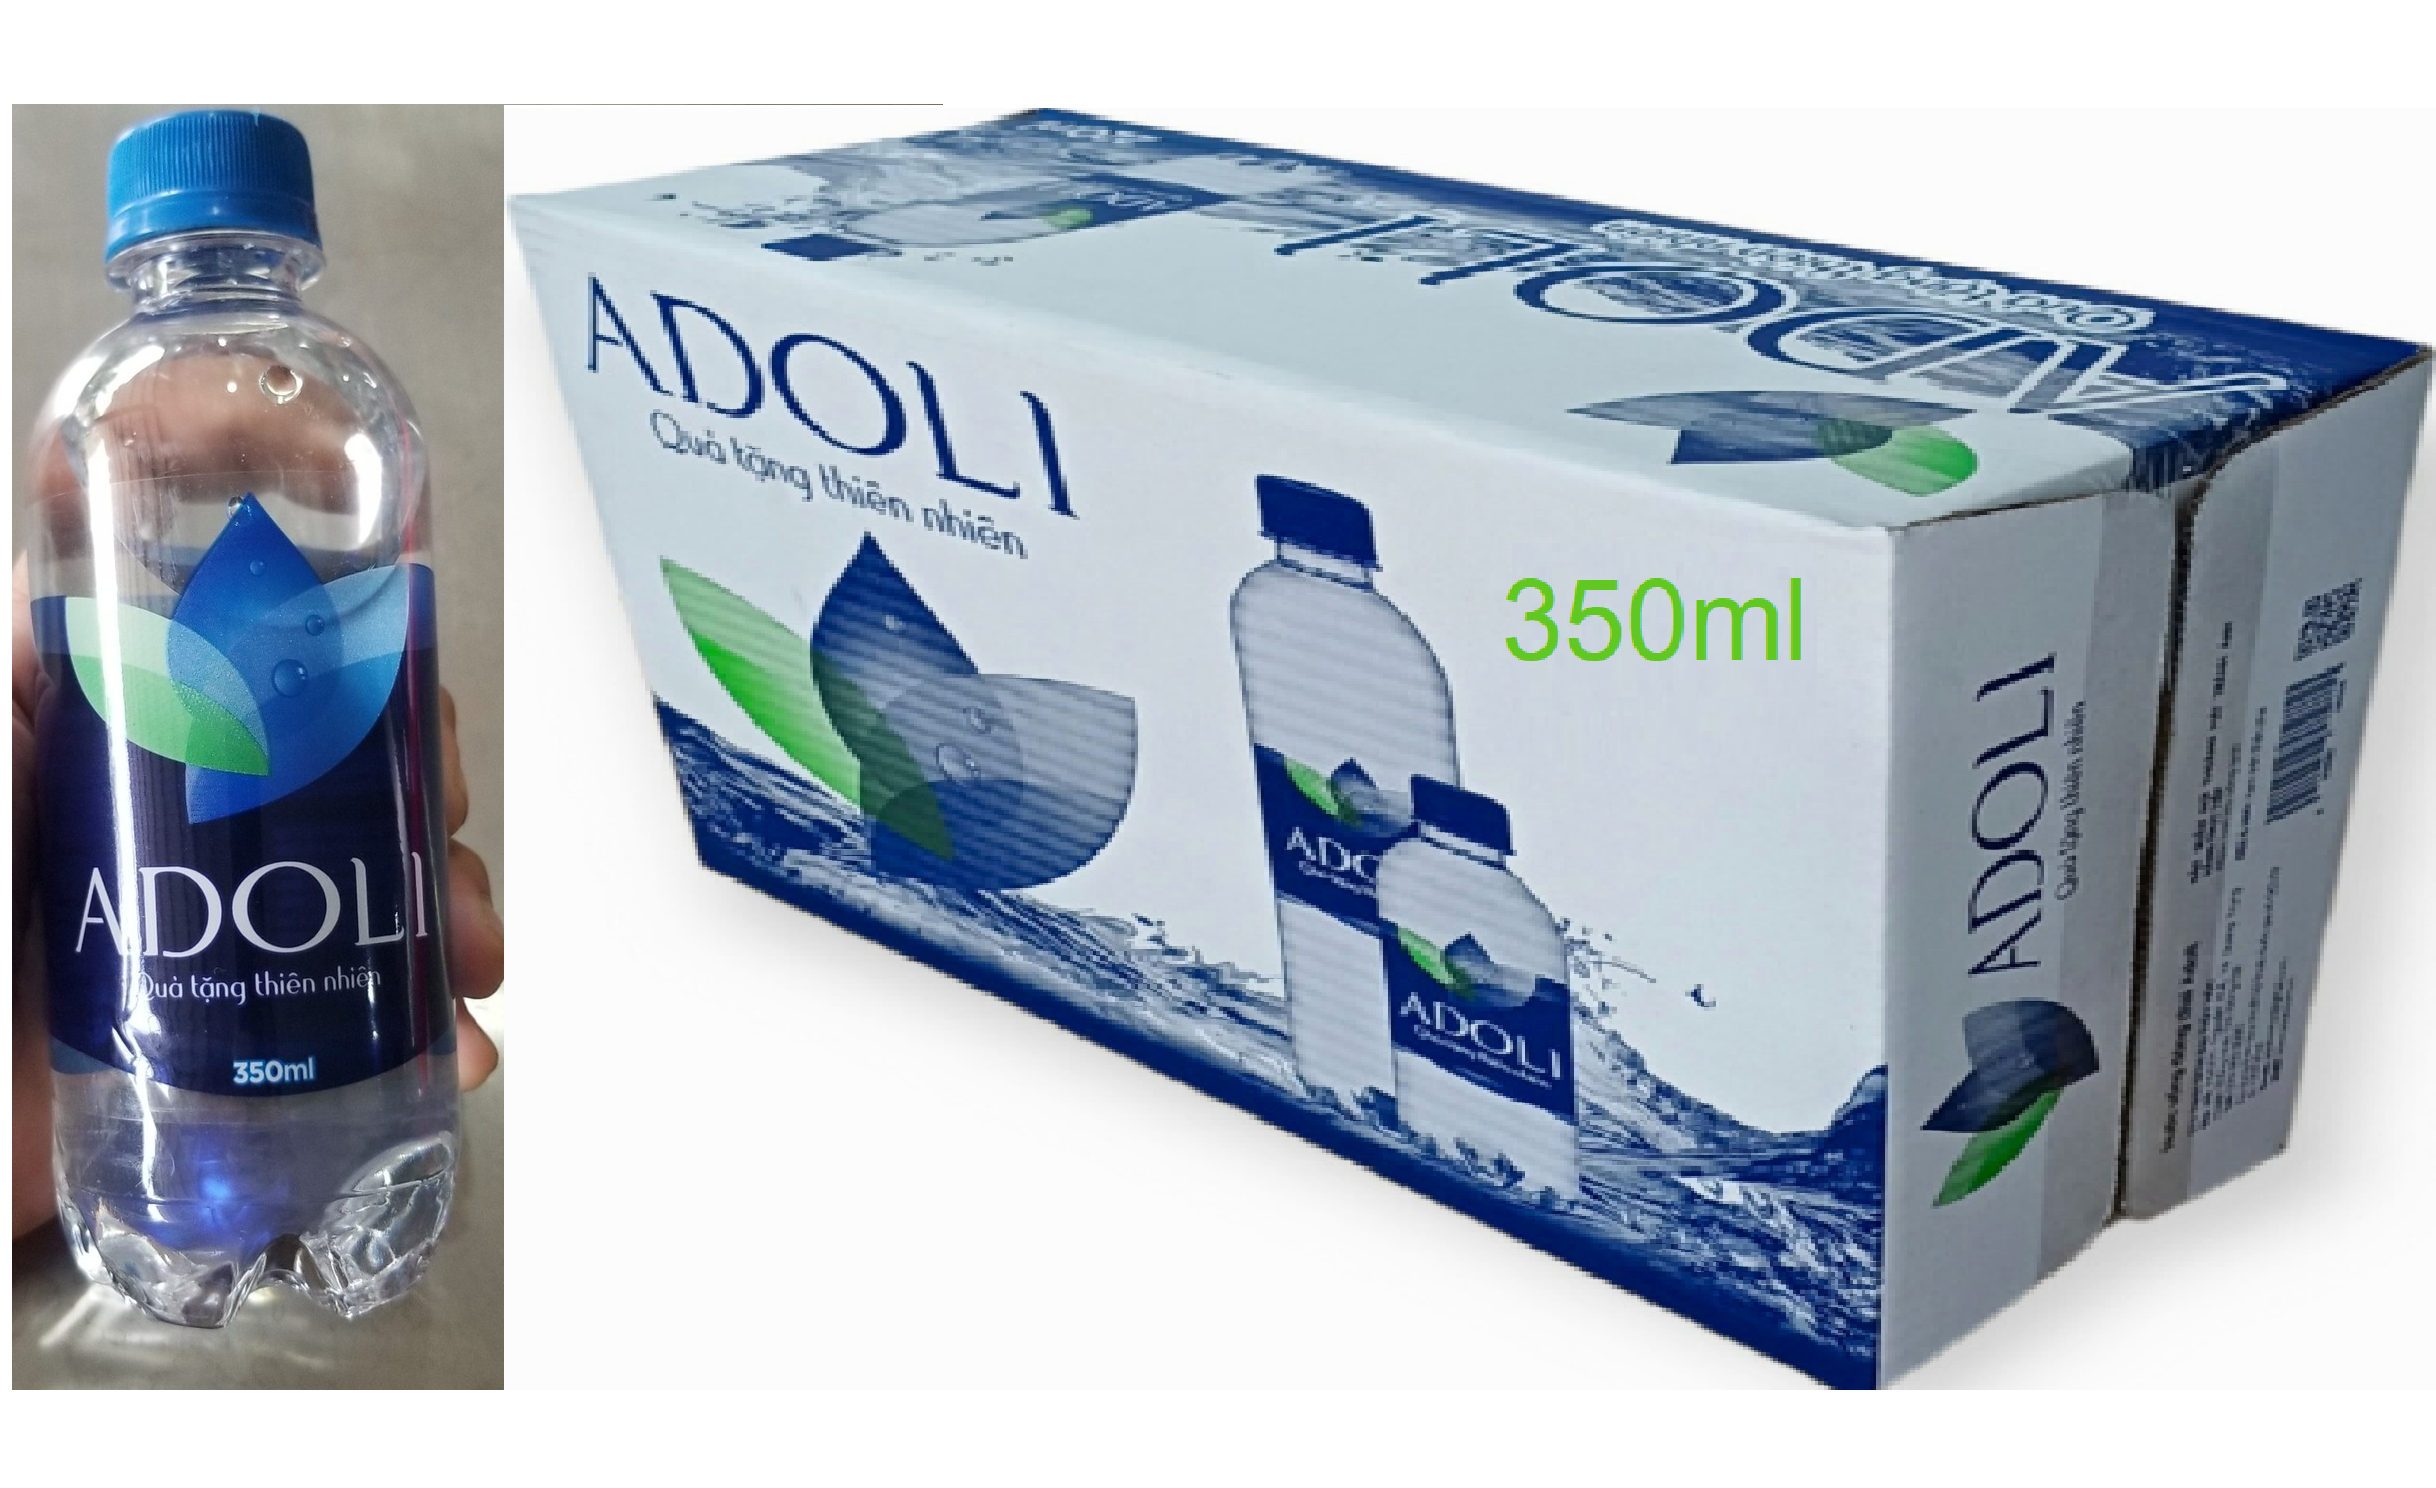 Nước suối chai nhỏ Adoli Thùng 24*350ml